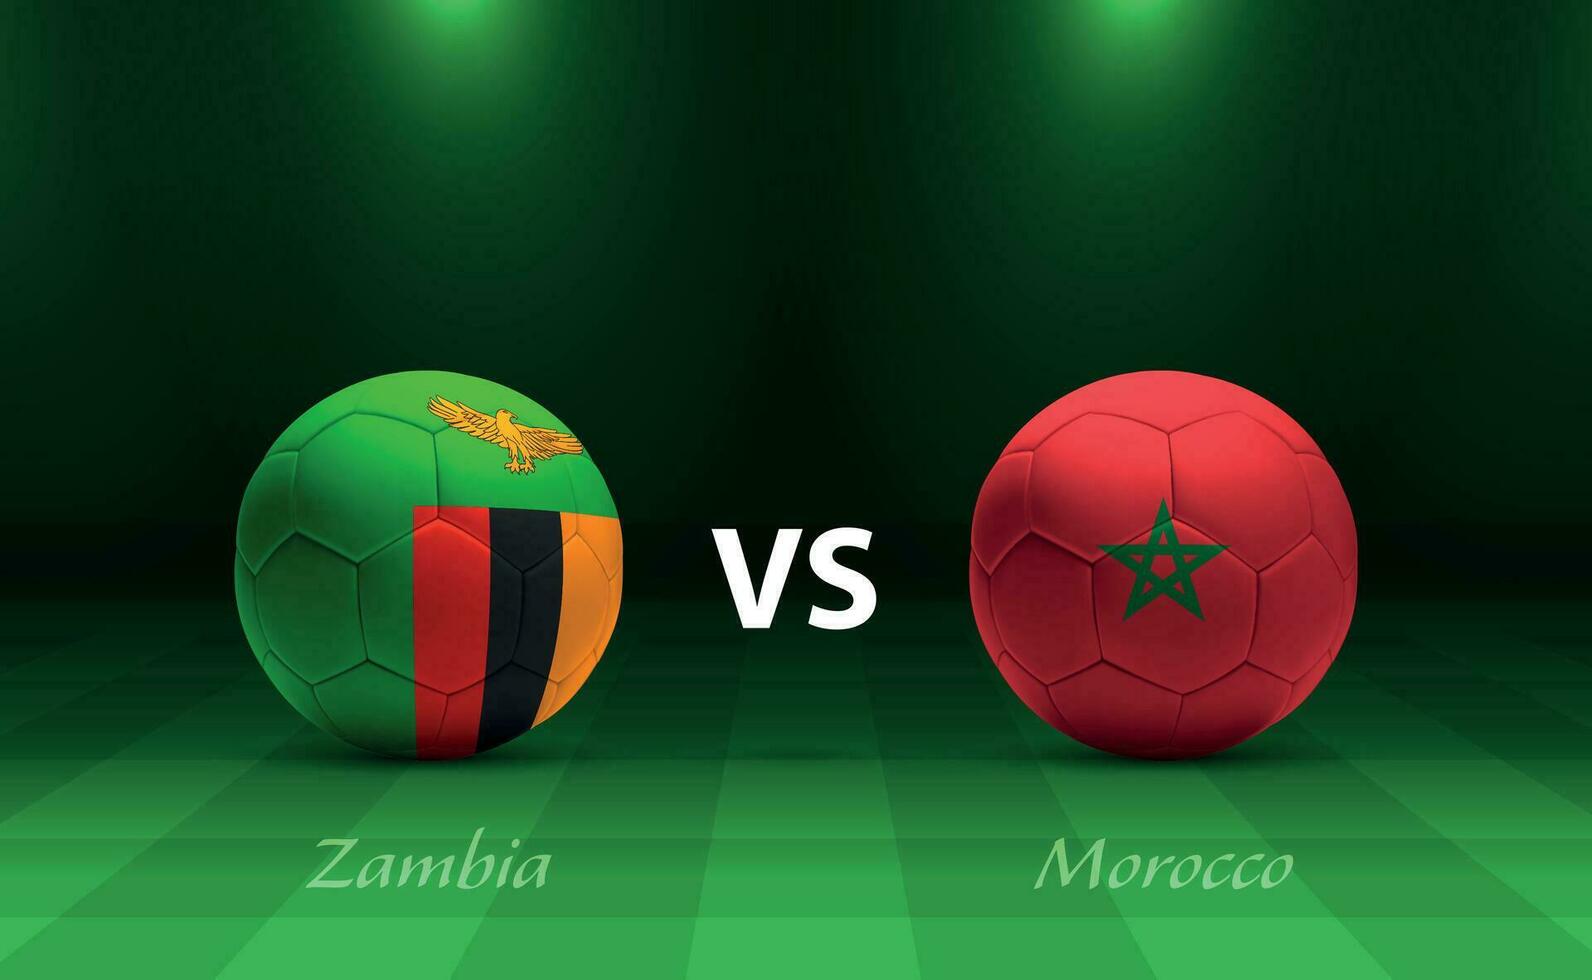 Zambia vs Morocco football scoreboard broadcast template vector